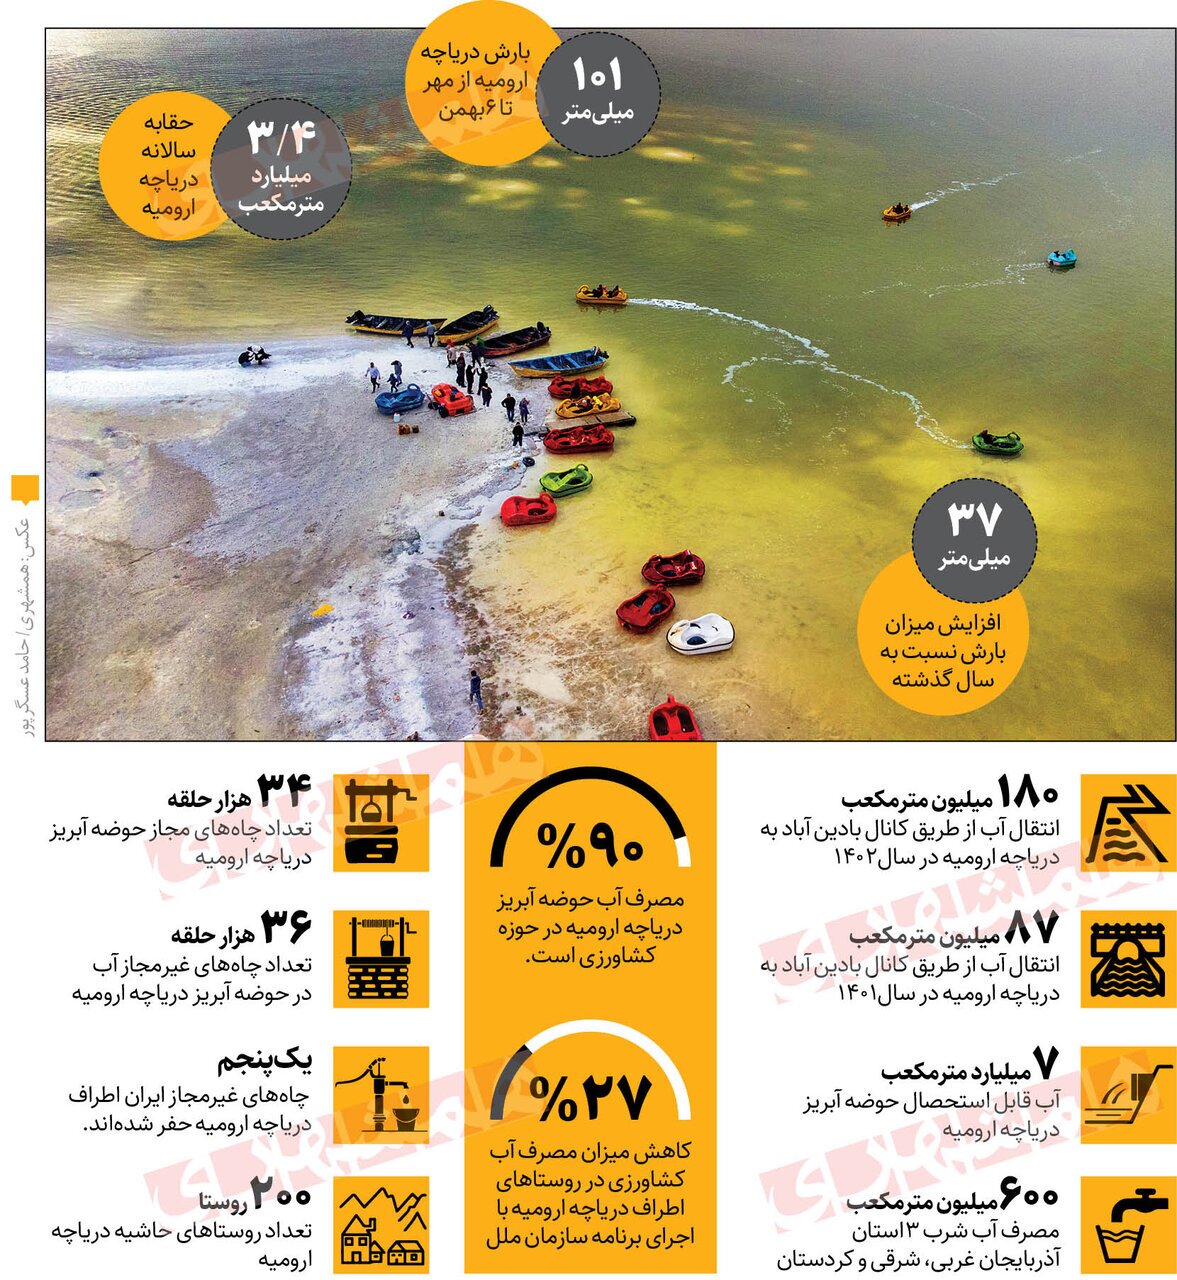 ژاپن برای نجات دریاچه ارومیه به کمک ایران آمد